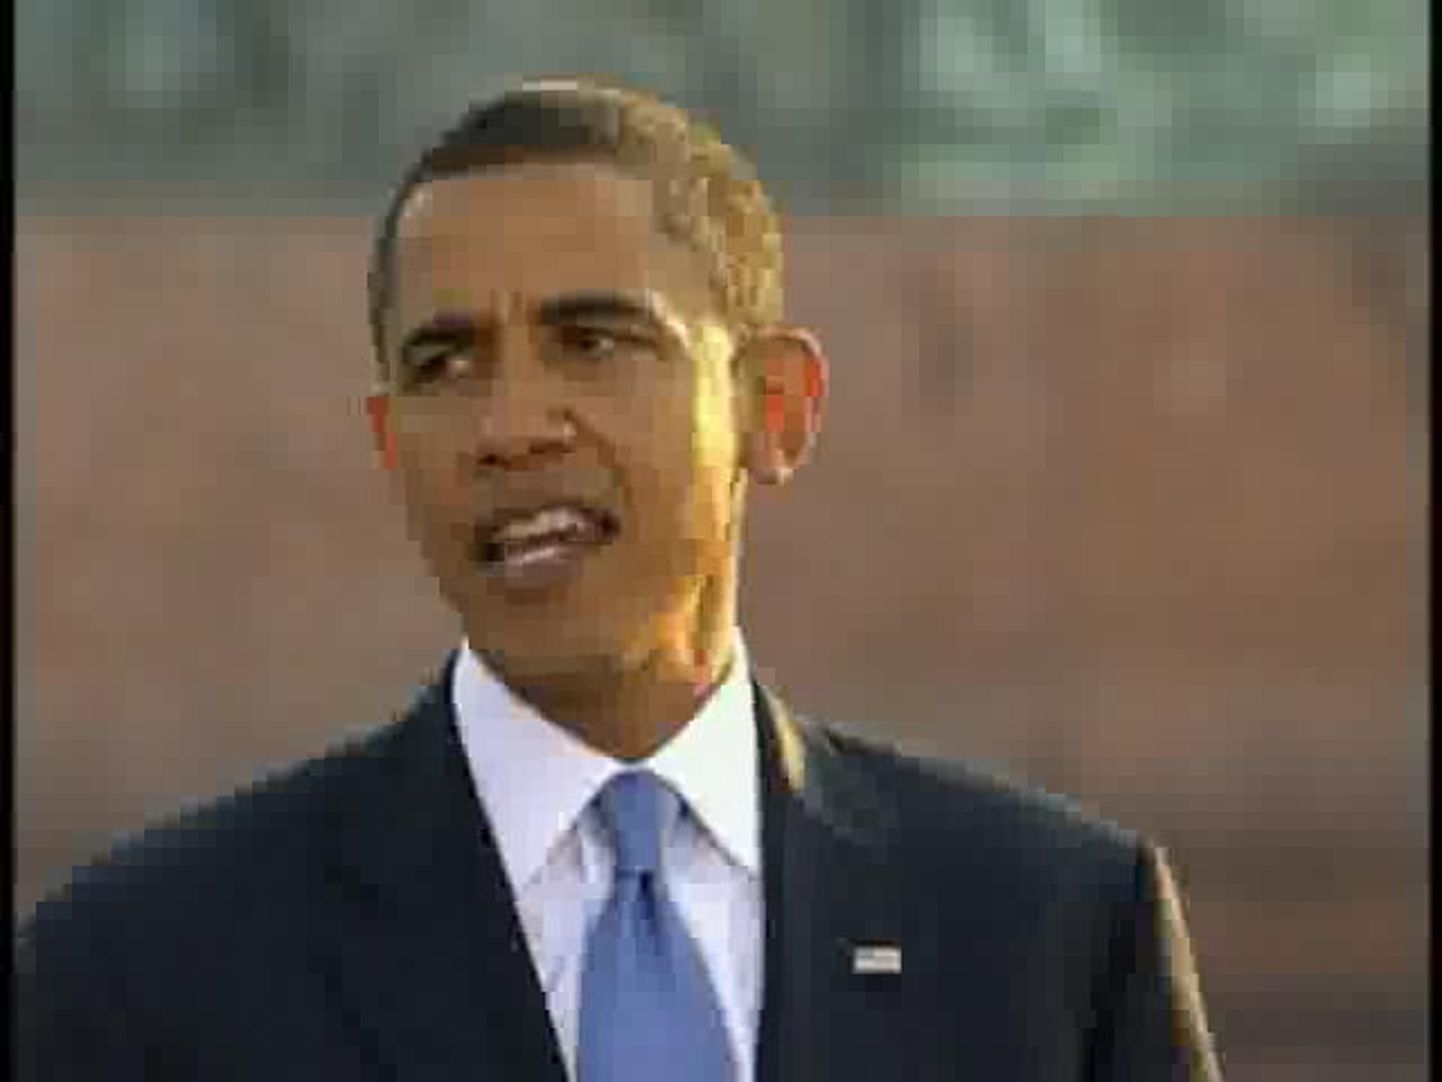 Obama pidas berliinlastele kõne võidusamba juures